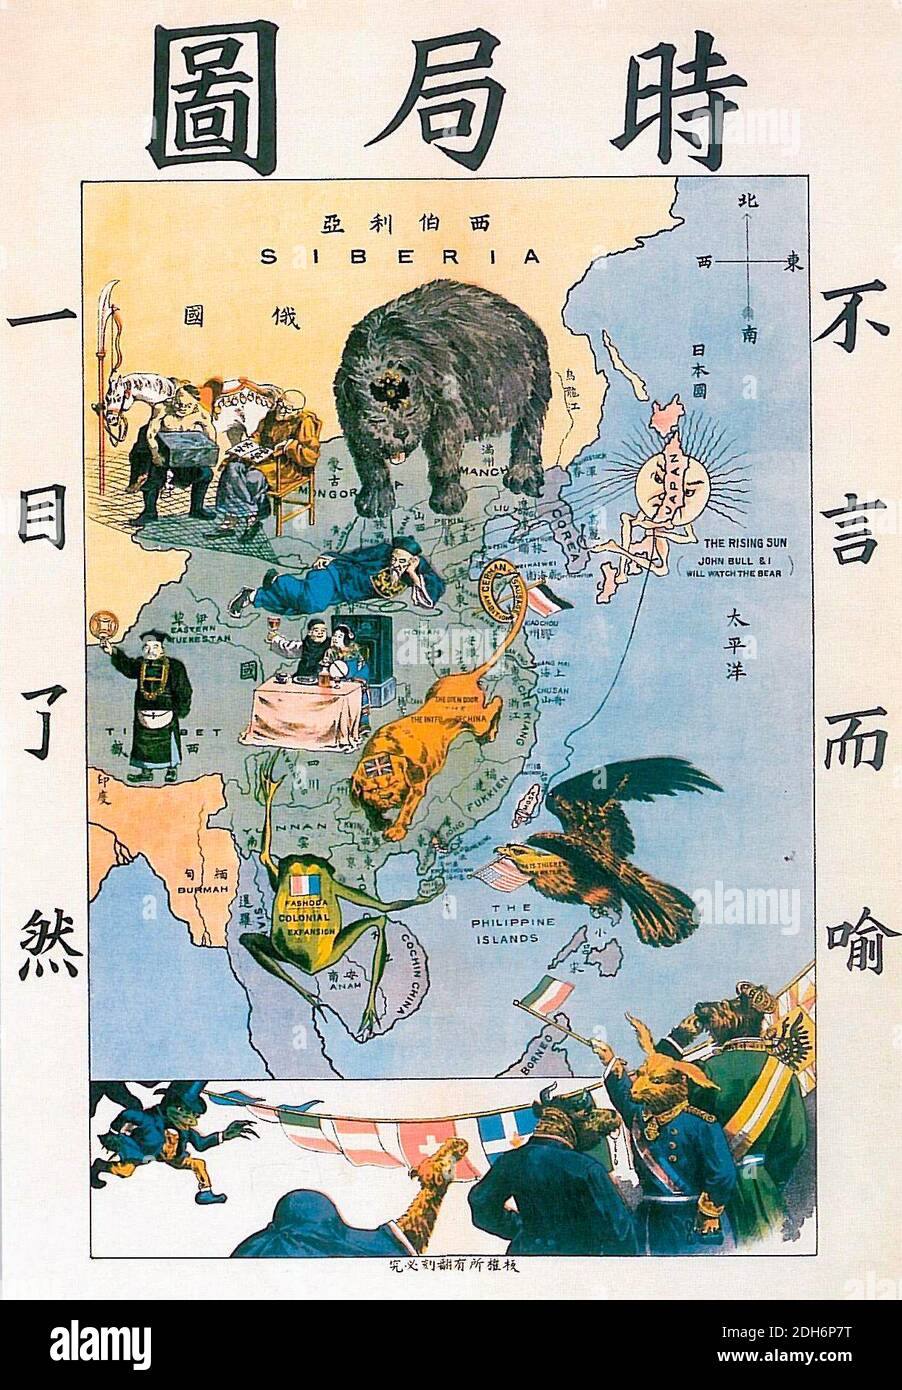 Die Situation im Fernen Osten - Autor Tse Tsan-Tai, dargestellt die westlichen Mächte in China am Ende des neunzehnten Jahrhunderts in symbolischer Form eingreifen. Auf der linken Seite klar auf einen Blick, auf der rechten Seite, selbstverständlich. Der Bär, der Russland repräsentiert, dringt aus dem Norden ein, der Bulldog-Kopf mit einem Löwenkörper, der das Vereinigte Königreich repräsentiert, befindet sich in Südchina, mit seinem Schwanz um die Halbinsel Shantung (die englische Kolonie Wehai war der Sitz der britischen Bulldogge in der ersten Version des Zeichentrickfilms), Der gallische Frosch befindet sich in Südostasien, mit einer Inschrift 'Fashoda', in Bezug auf Fashoda Stockfoto